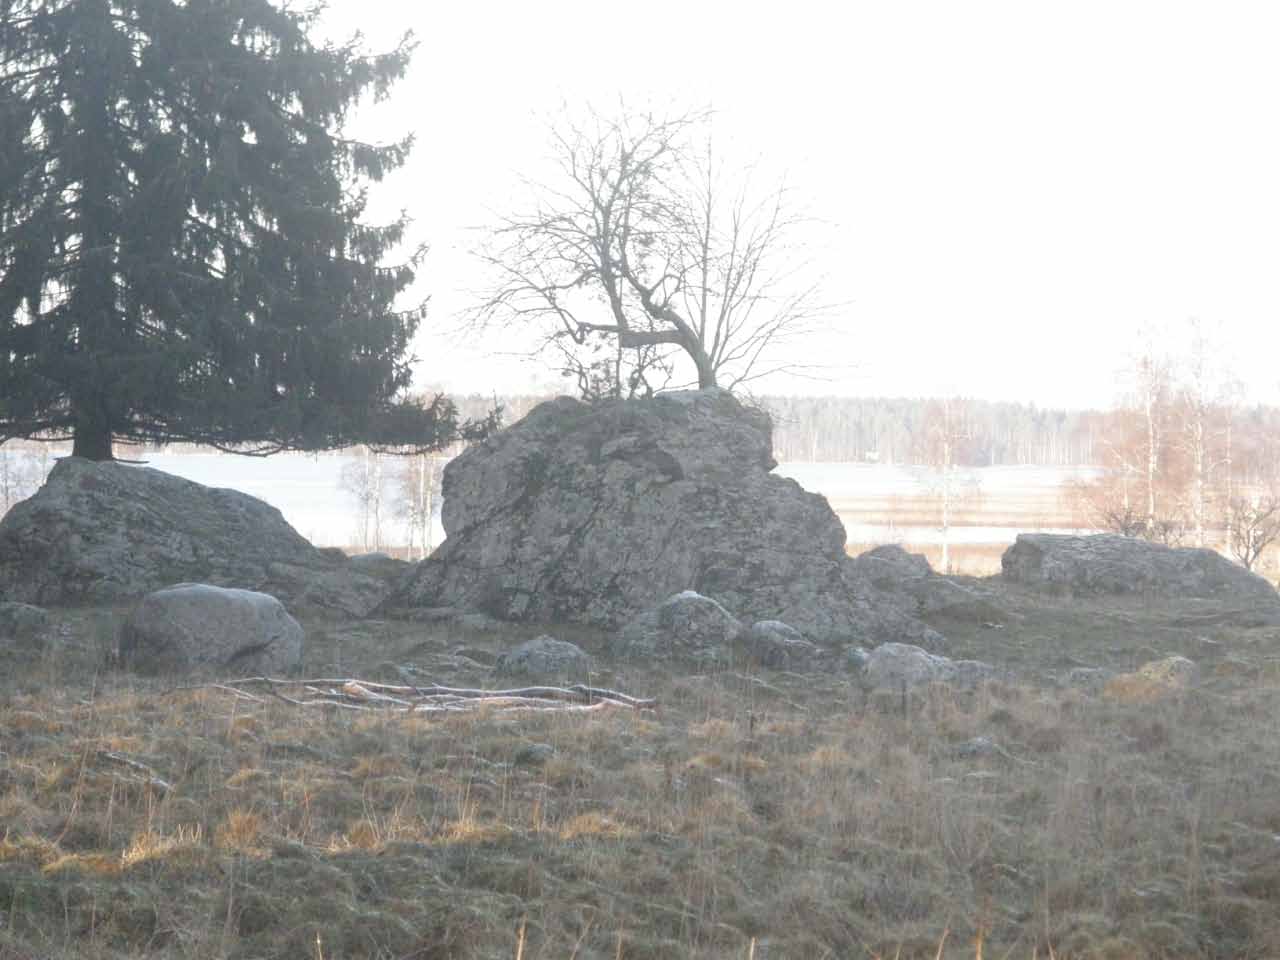 Kuva: Kuppikivi on kivisellä laitumella kuvan keskellä pihlajan alla. Kuppikivi on suuri, lohkeillut, jyrkkäsivuinen kivi, jonka tasaisella yläpinnalla on havaittu ainakin 102 kuppia. Taustalla näkyy Nuoramoisjärvi. Kuvattu luoteeseen. Lahden museot / Päijät-Hämeen alueellinen vastuumuseo. CC BY 4.0 Antti Bilund 9.12.2020